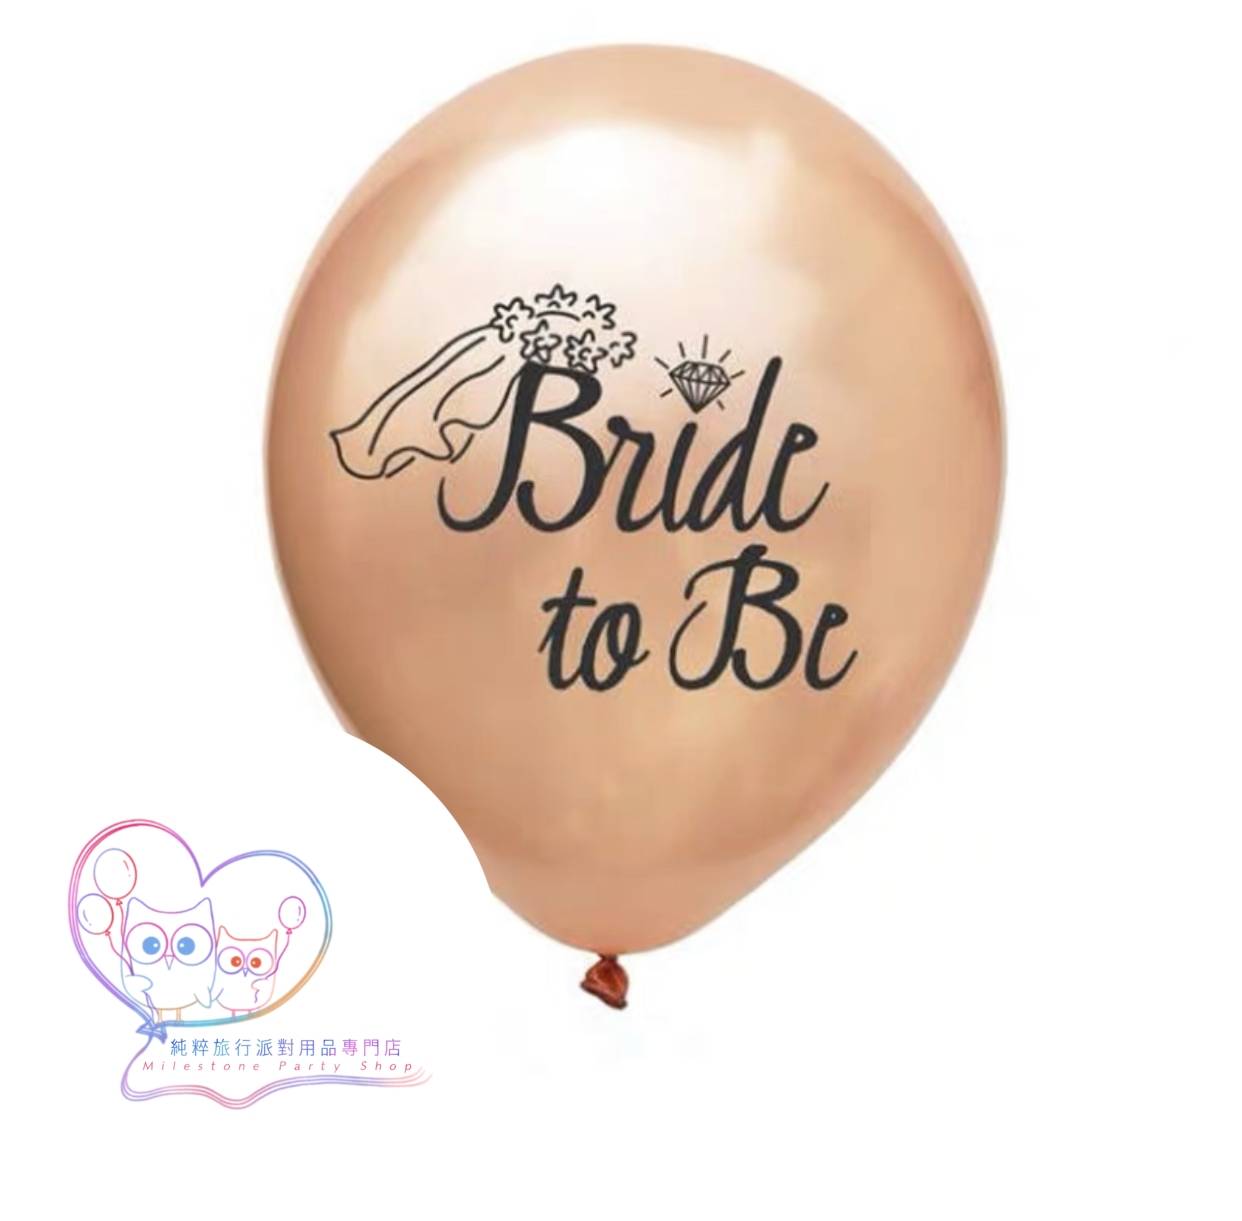 12吋乳膠氣球 (Bride to Be) (玫瑰金色) LBL5